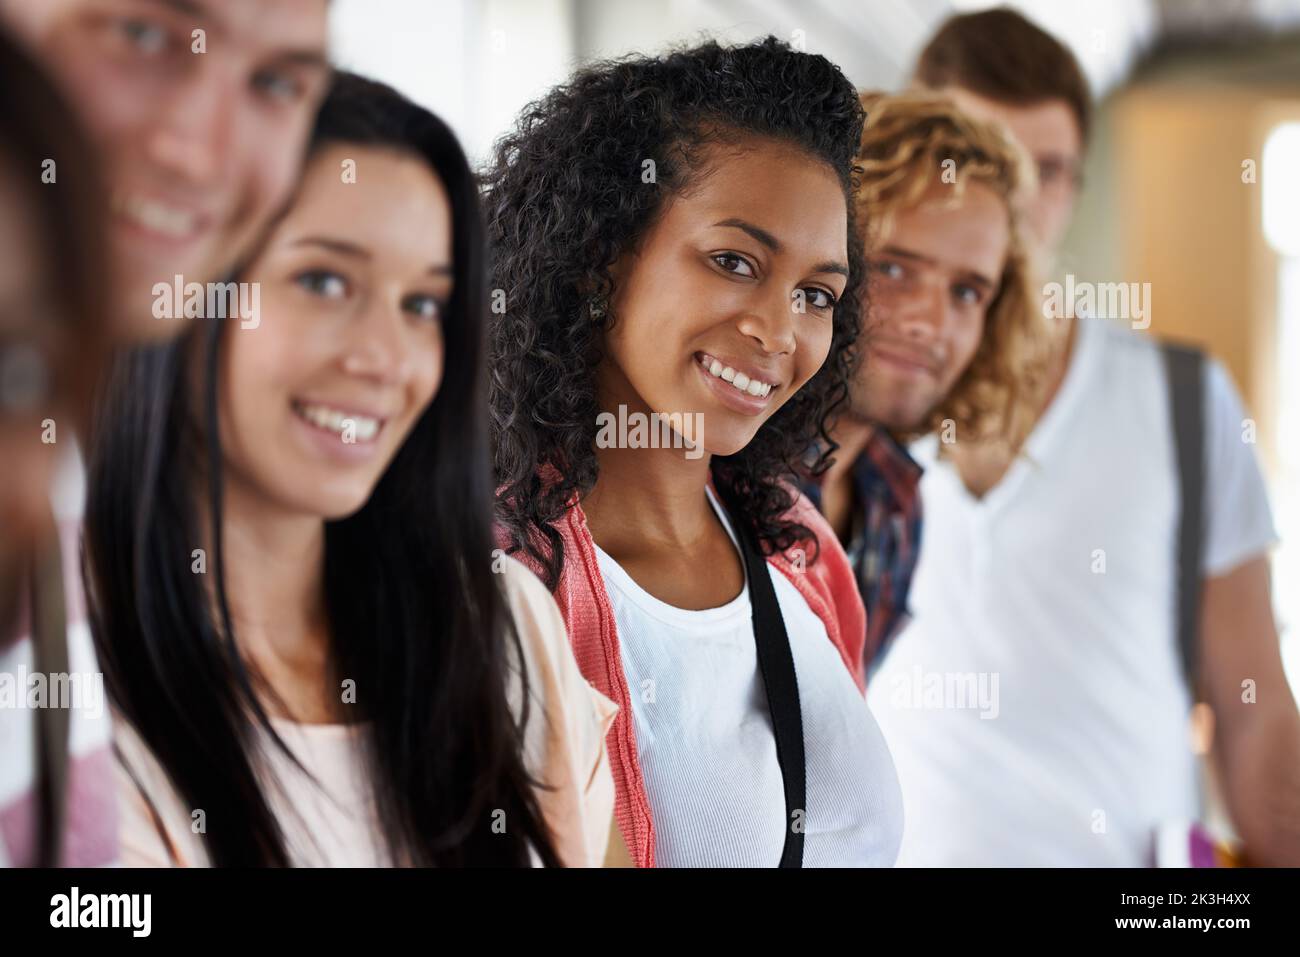 Sie liebt das Universitätsleben. Porträt einer schönen jungen College-Studentin, die mit ihren Freunden steht. Stockfoto